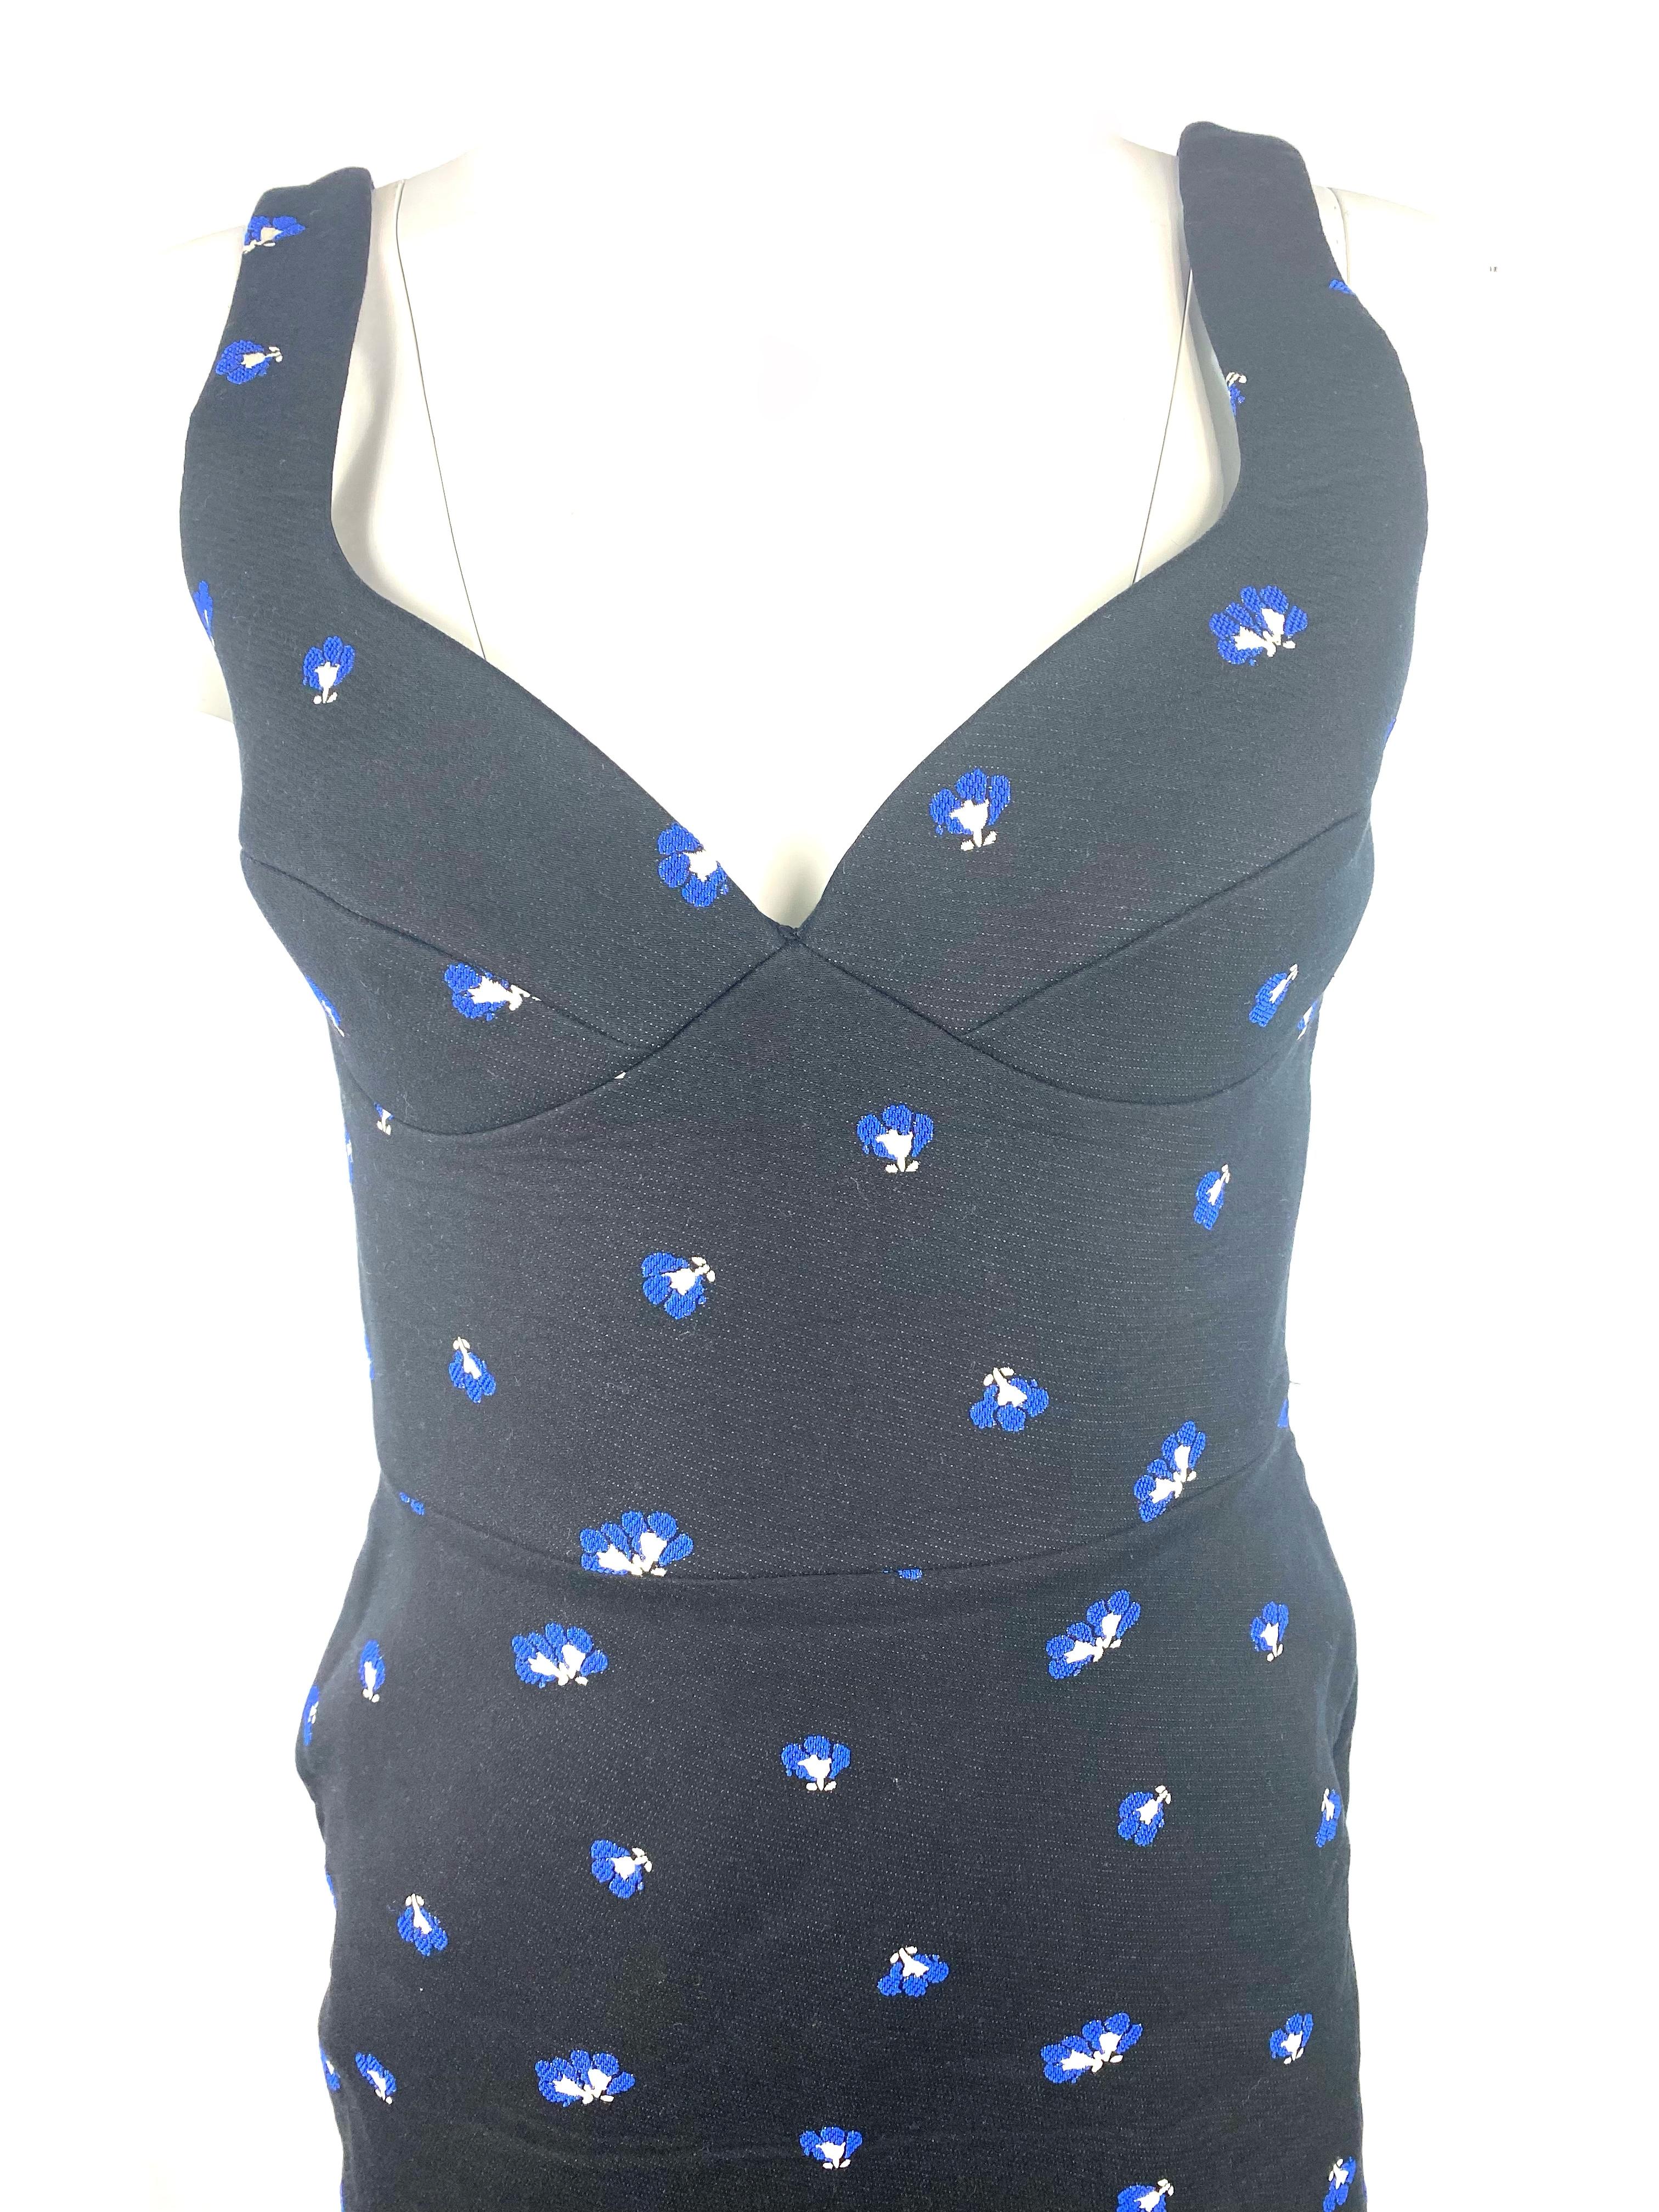 Einzelheiten zum Produkt:

Das Kleid hat ein blau-weißes Blumenmuster, einen durchgehenden silberfarbenen Reißverschluss hinten, einen offenen Rücken und ist mittellang.